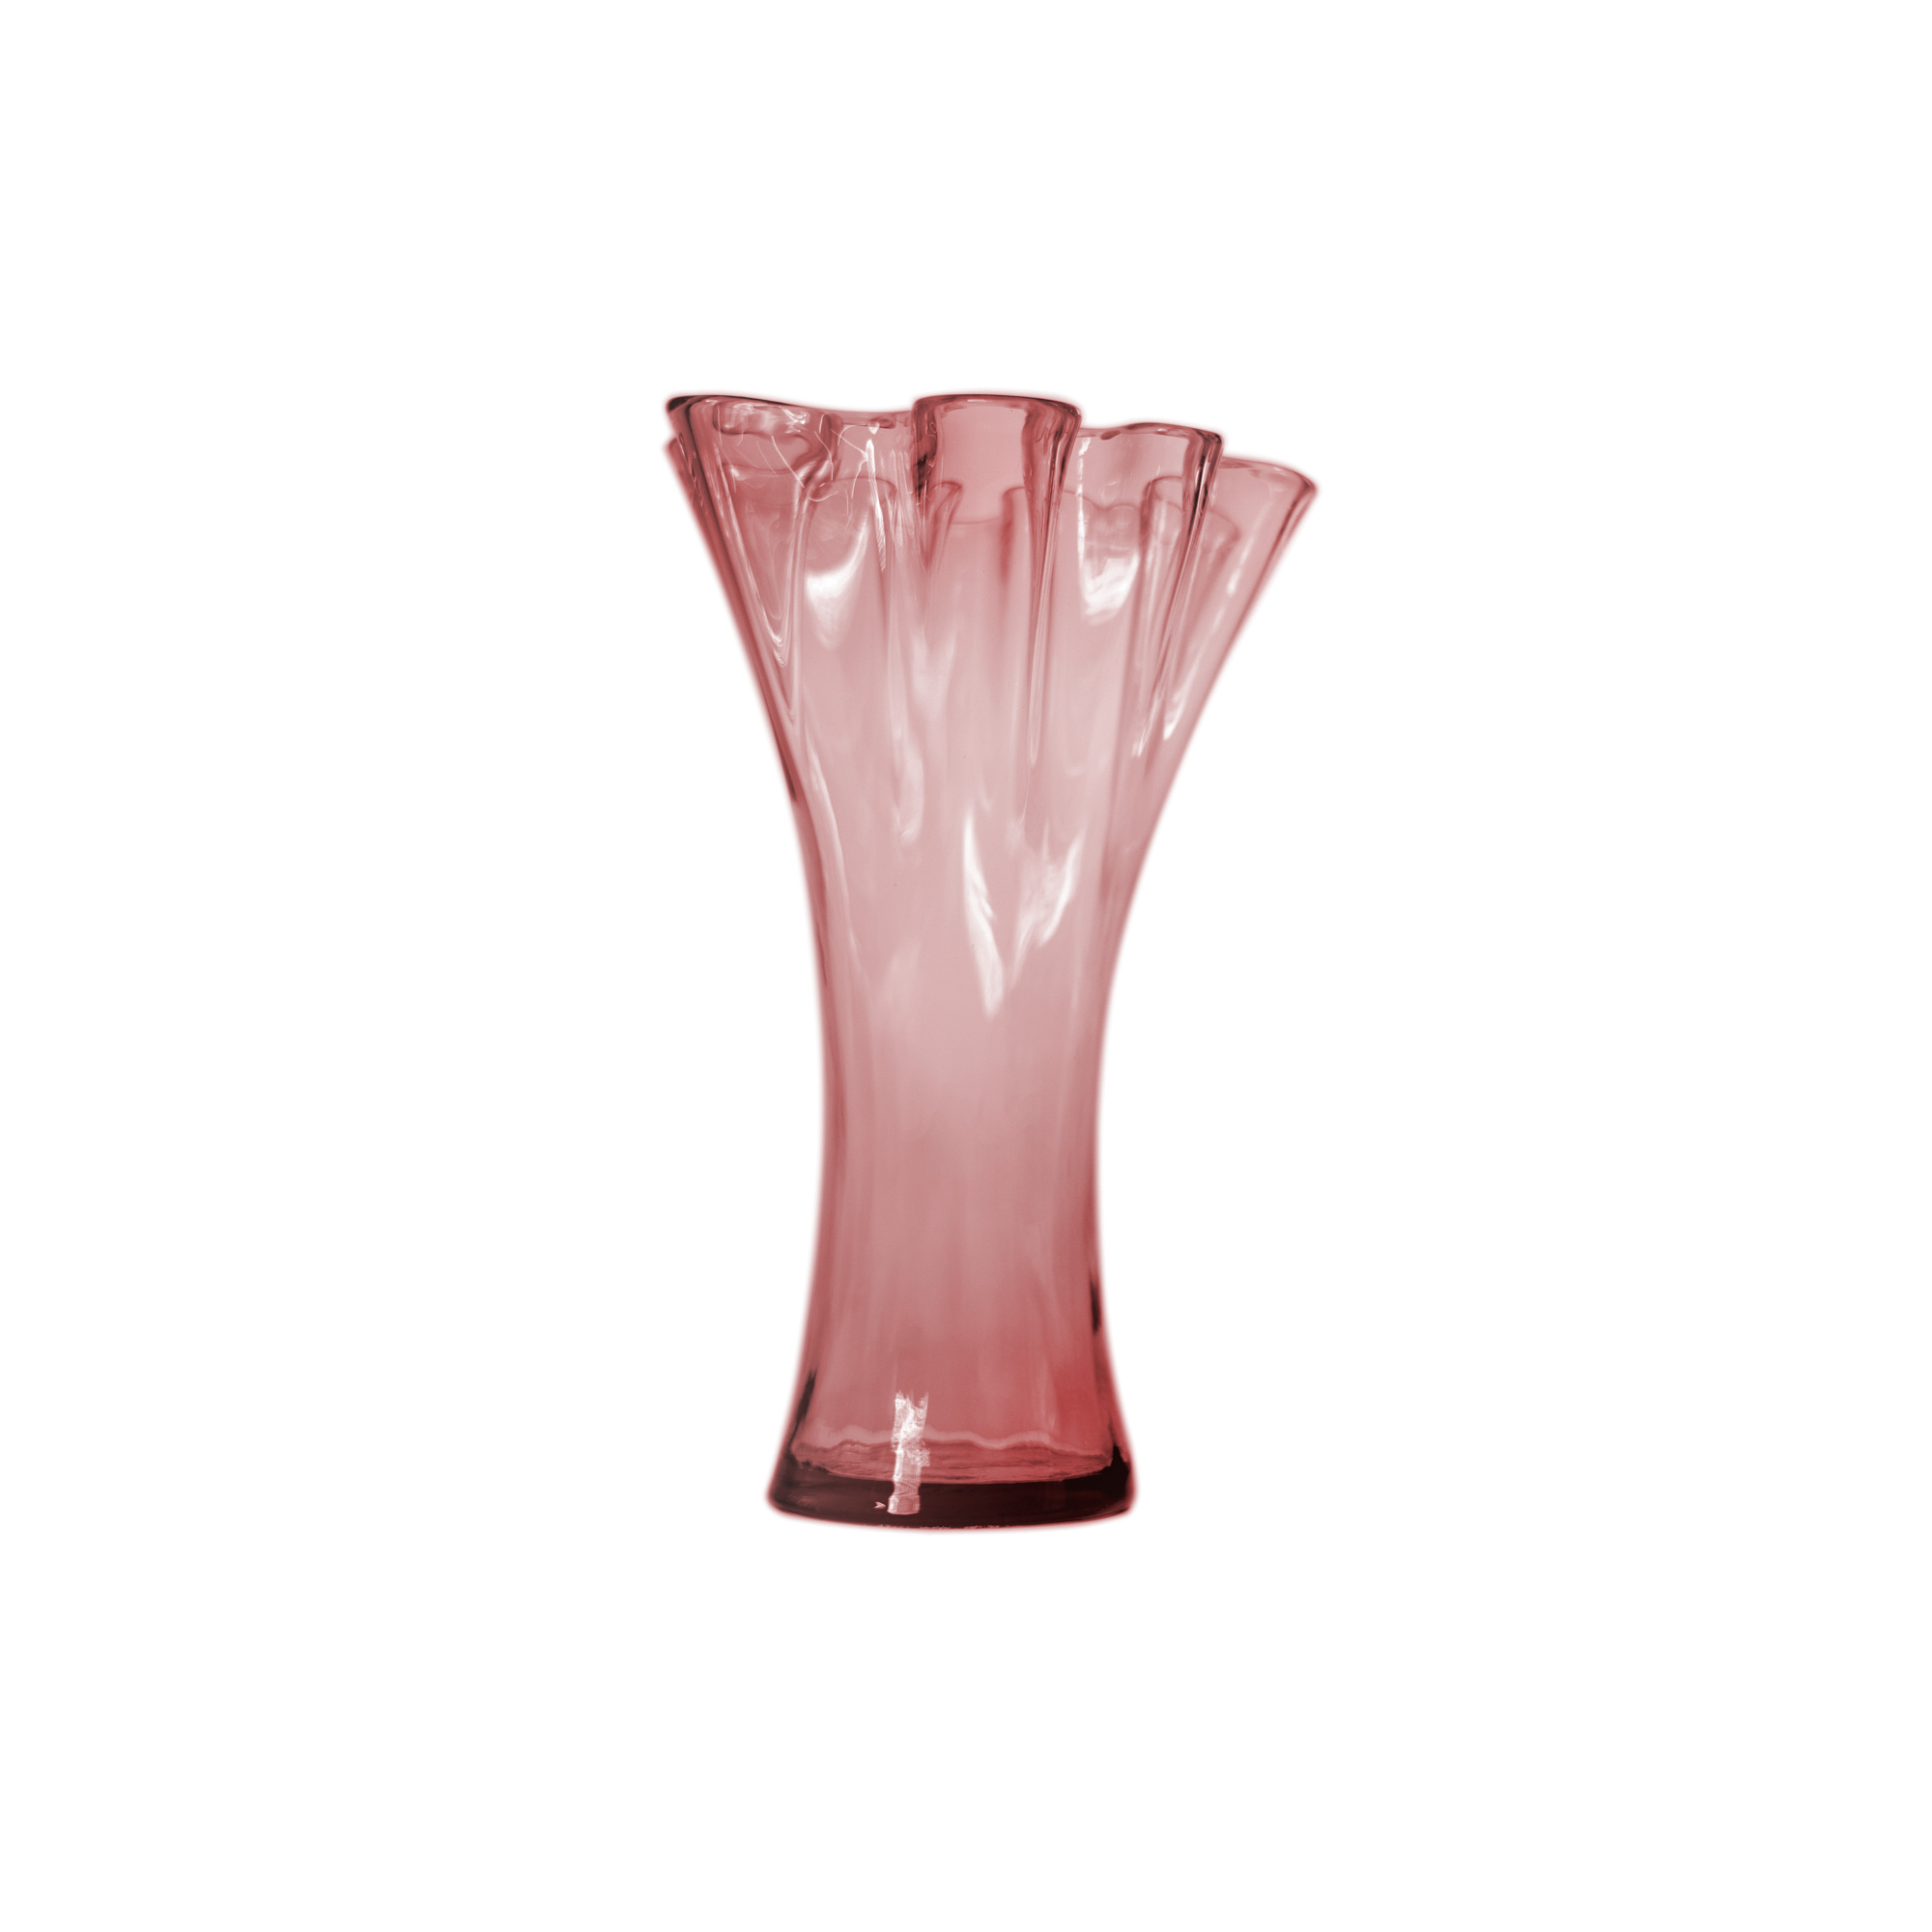 Ваза San miguel Artesania розовый 30 см ваза san miguel enea тёмно коричневая 33 см